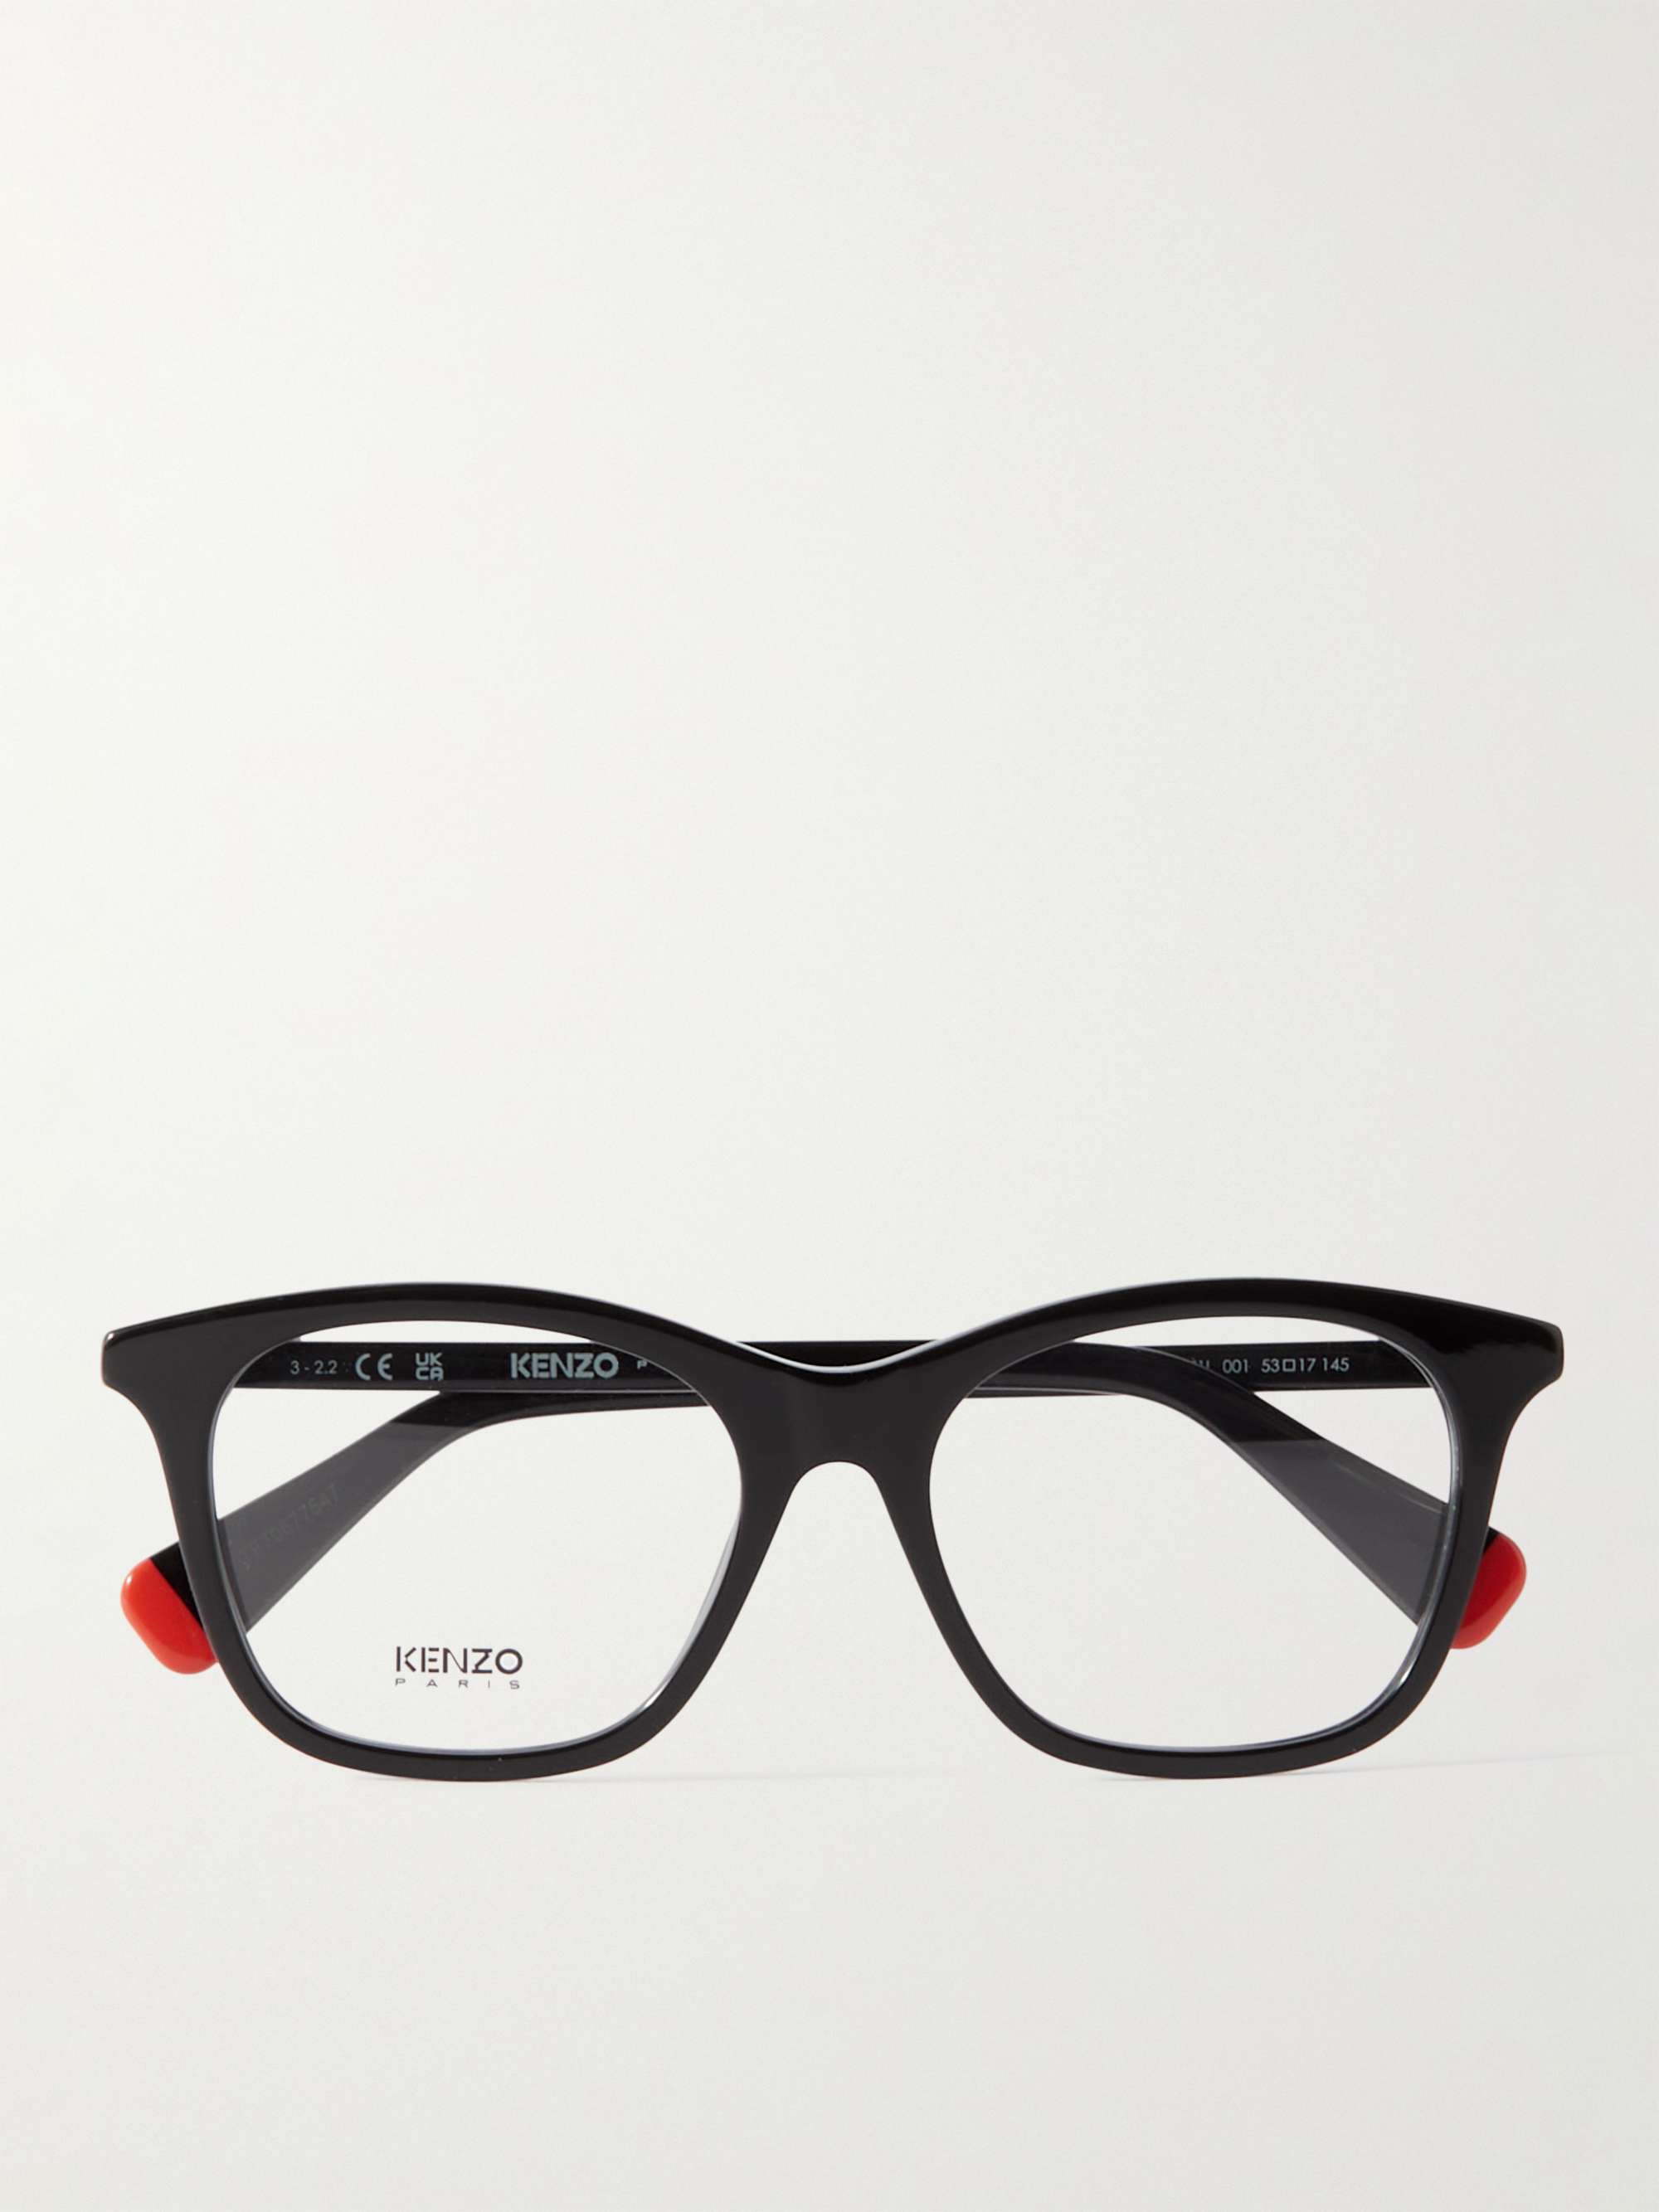 KENZO D-Frame Acetate Optical Glasses | MR PORTER